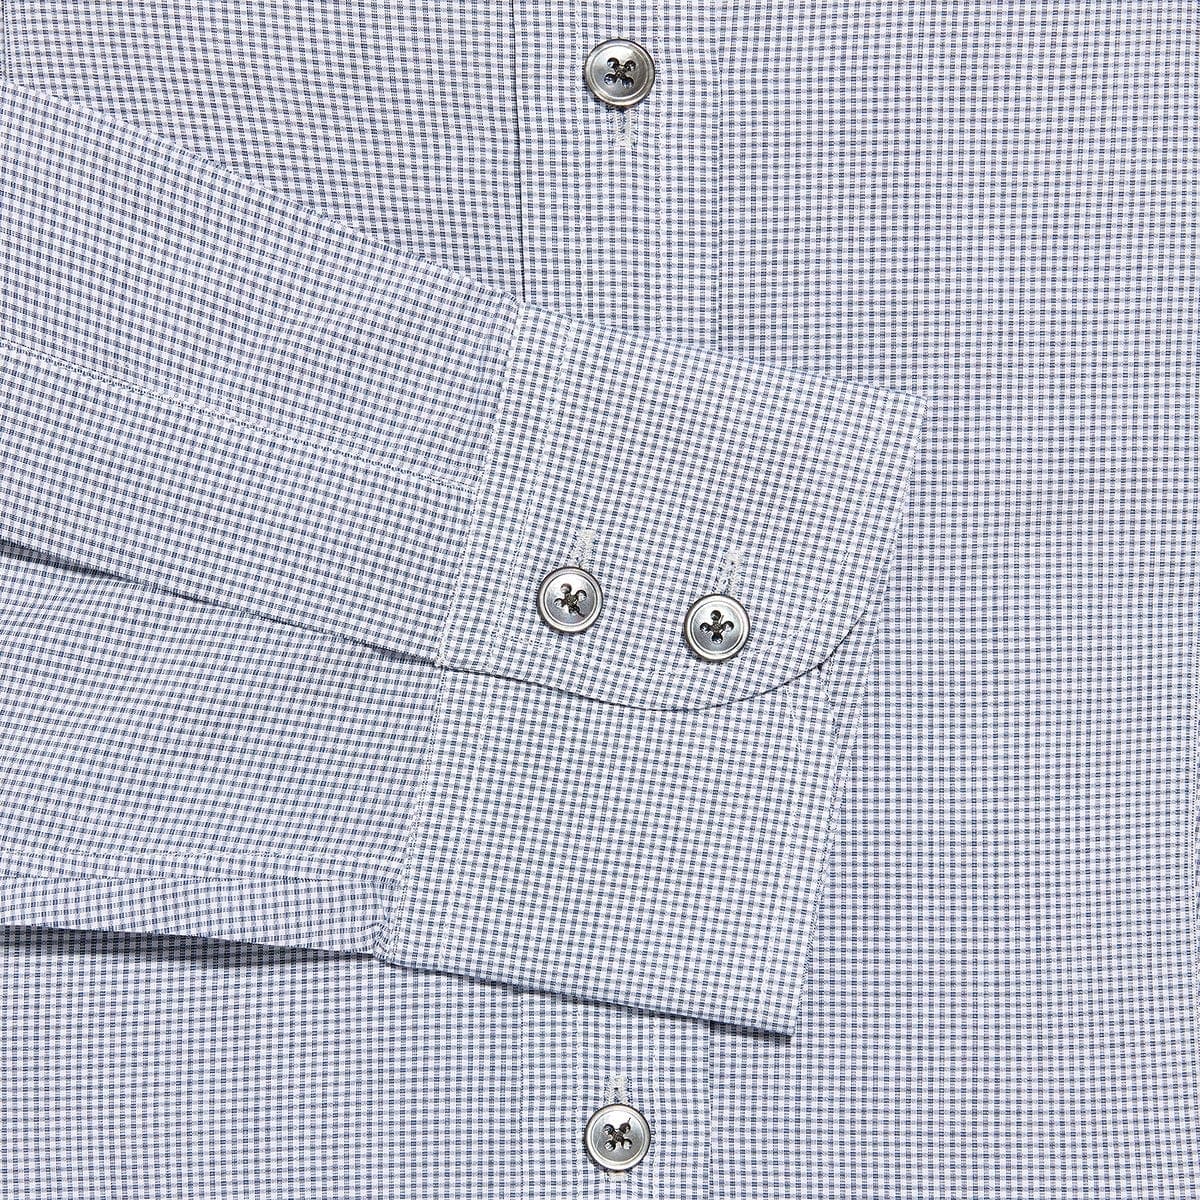 Contemporary Fit, Classic Collar, 2 Button Cuff Shirt in a Black & White Check Poplin Cotton